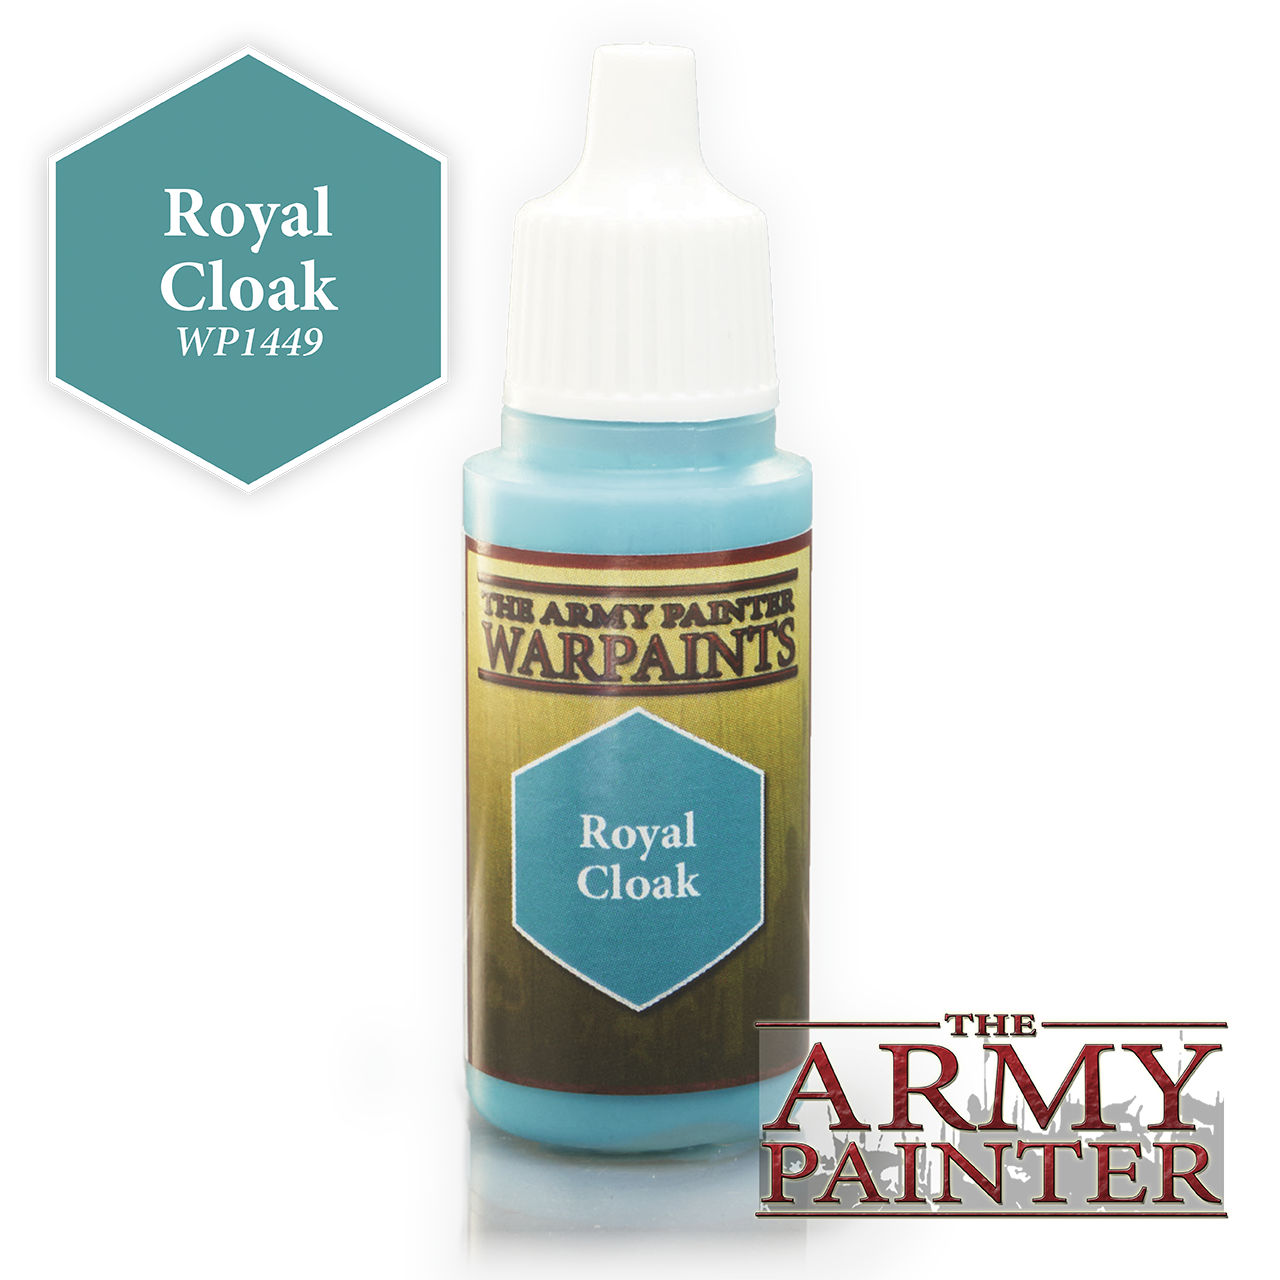 The Army Painter Warpaints: Royal Cloak (18ml)